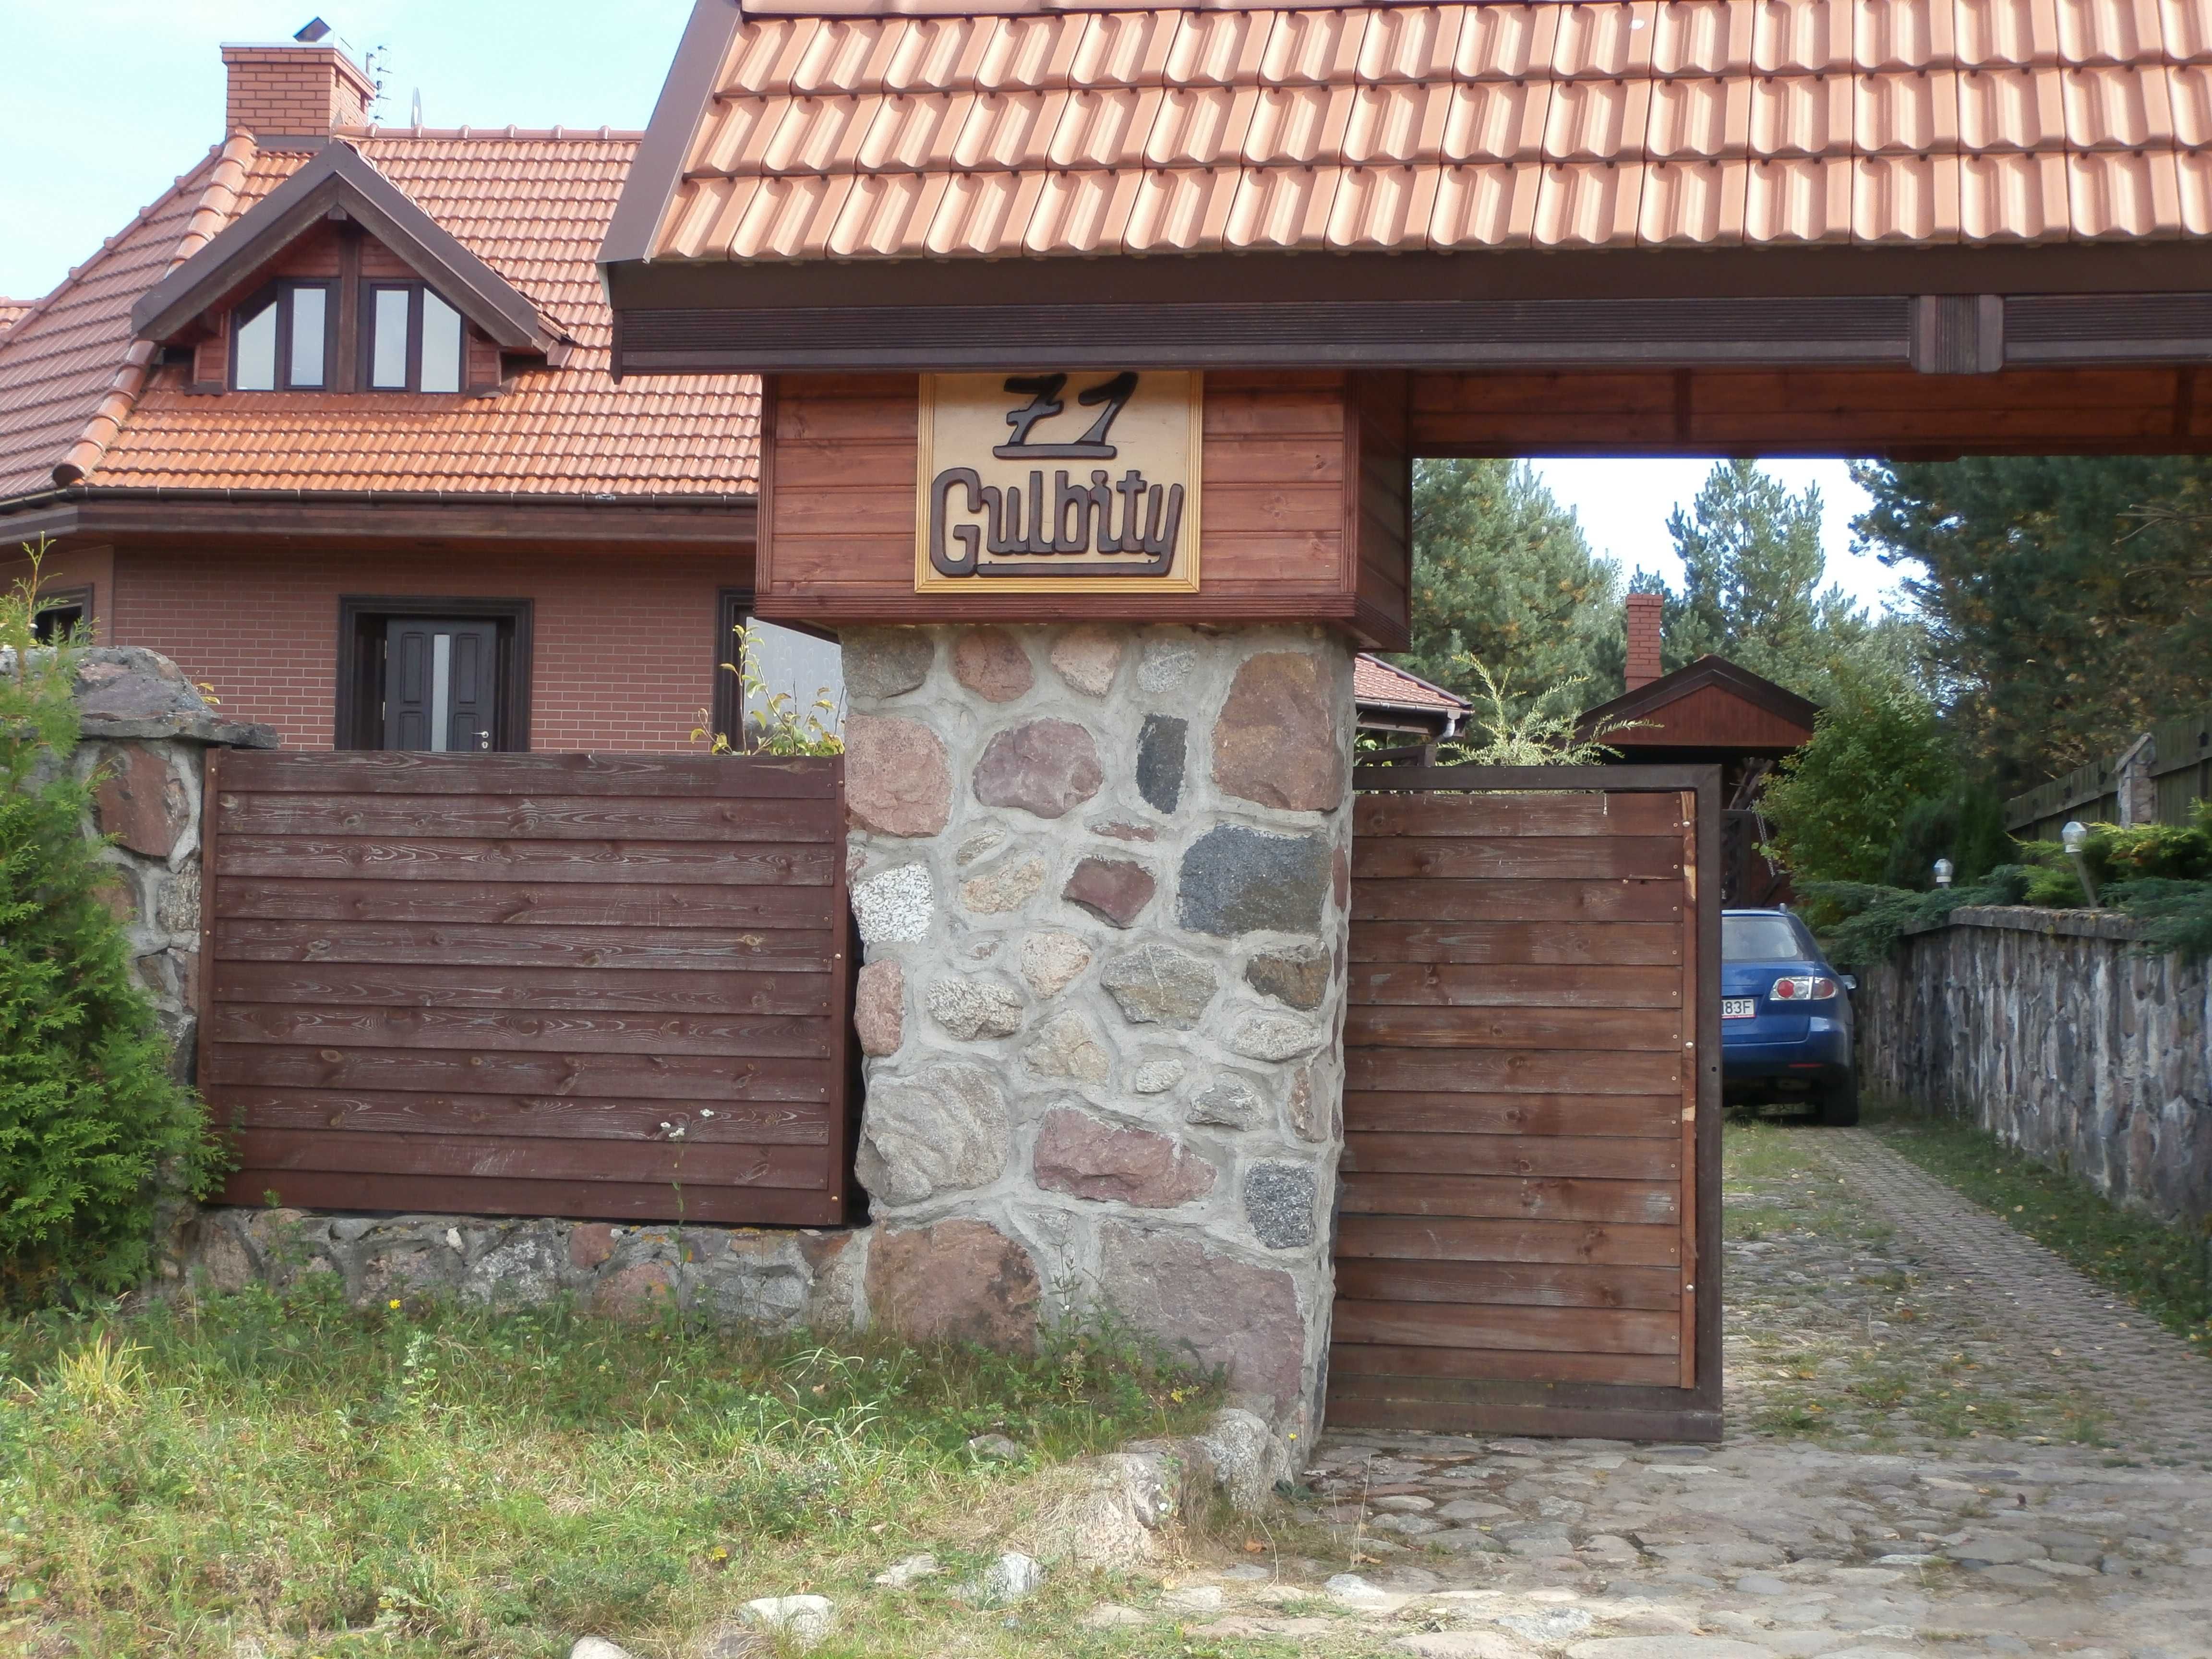 Dom turystyczny nad samym jeziorem Narie (Warmia i Mazury).